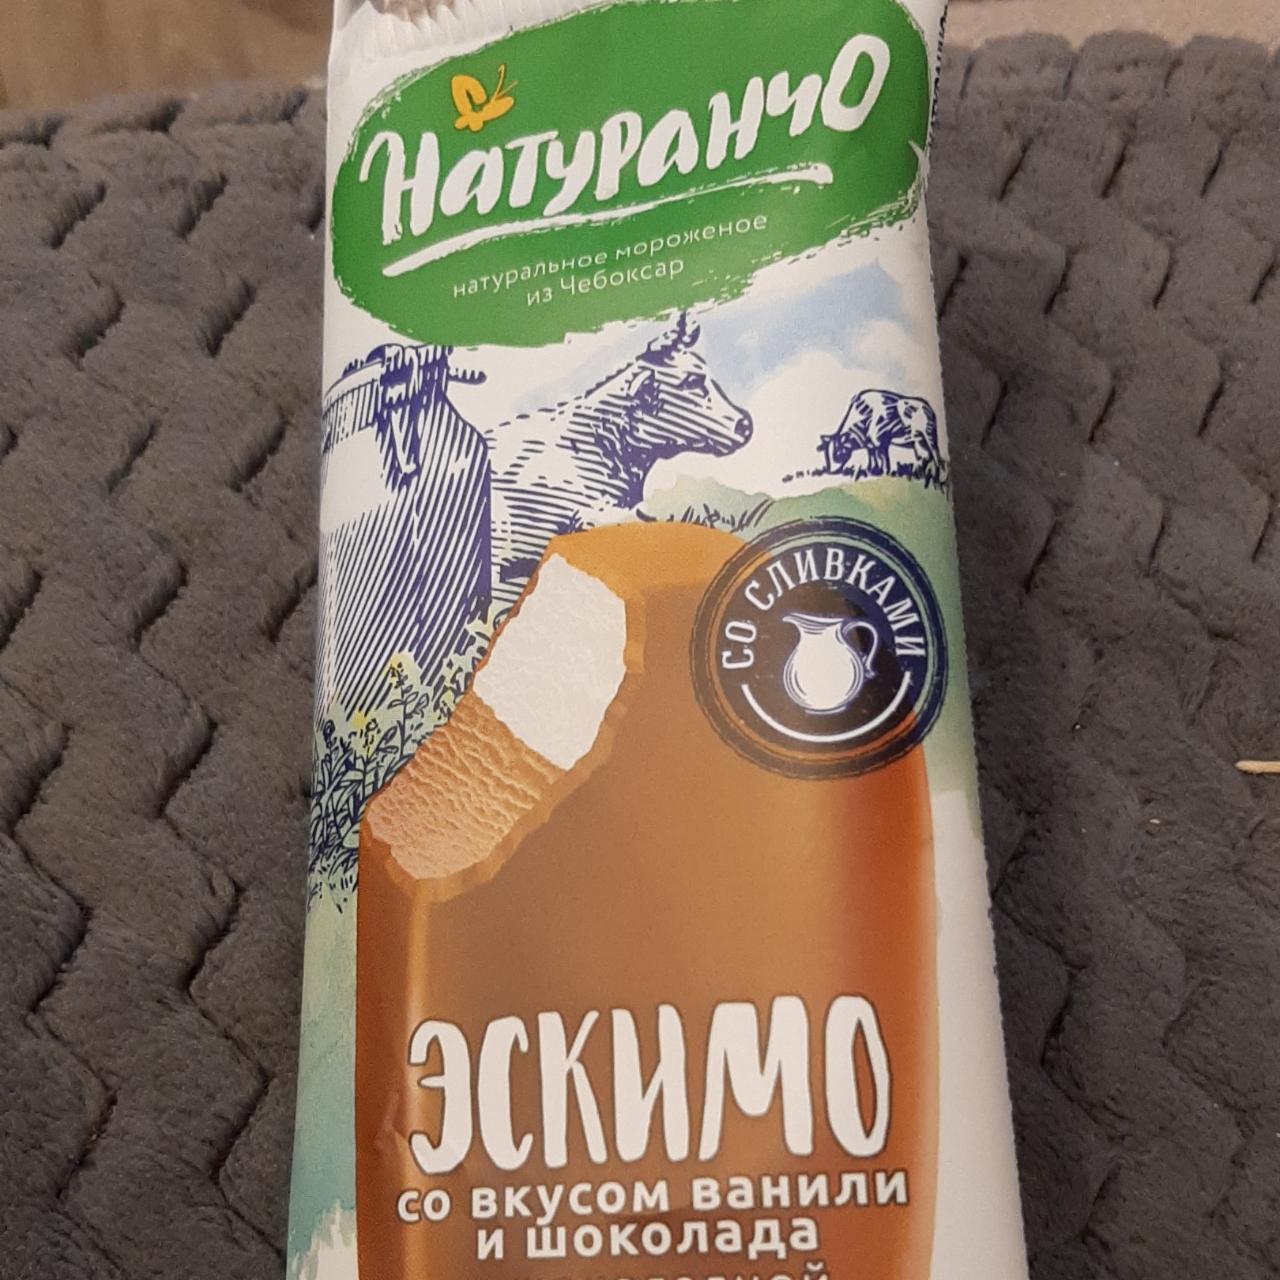 Фото - Мороженое эскимо со вкусом ванили и шоколада Натуранчо